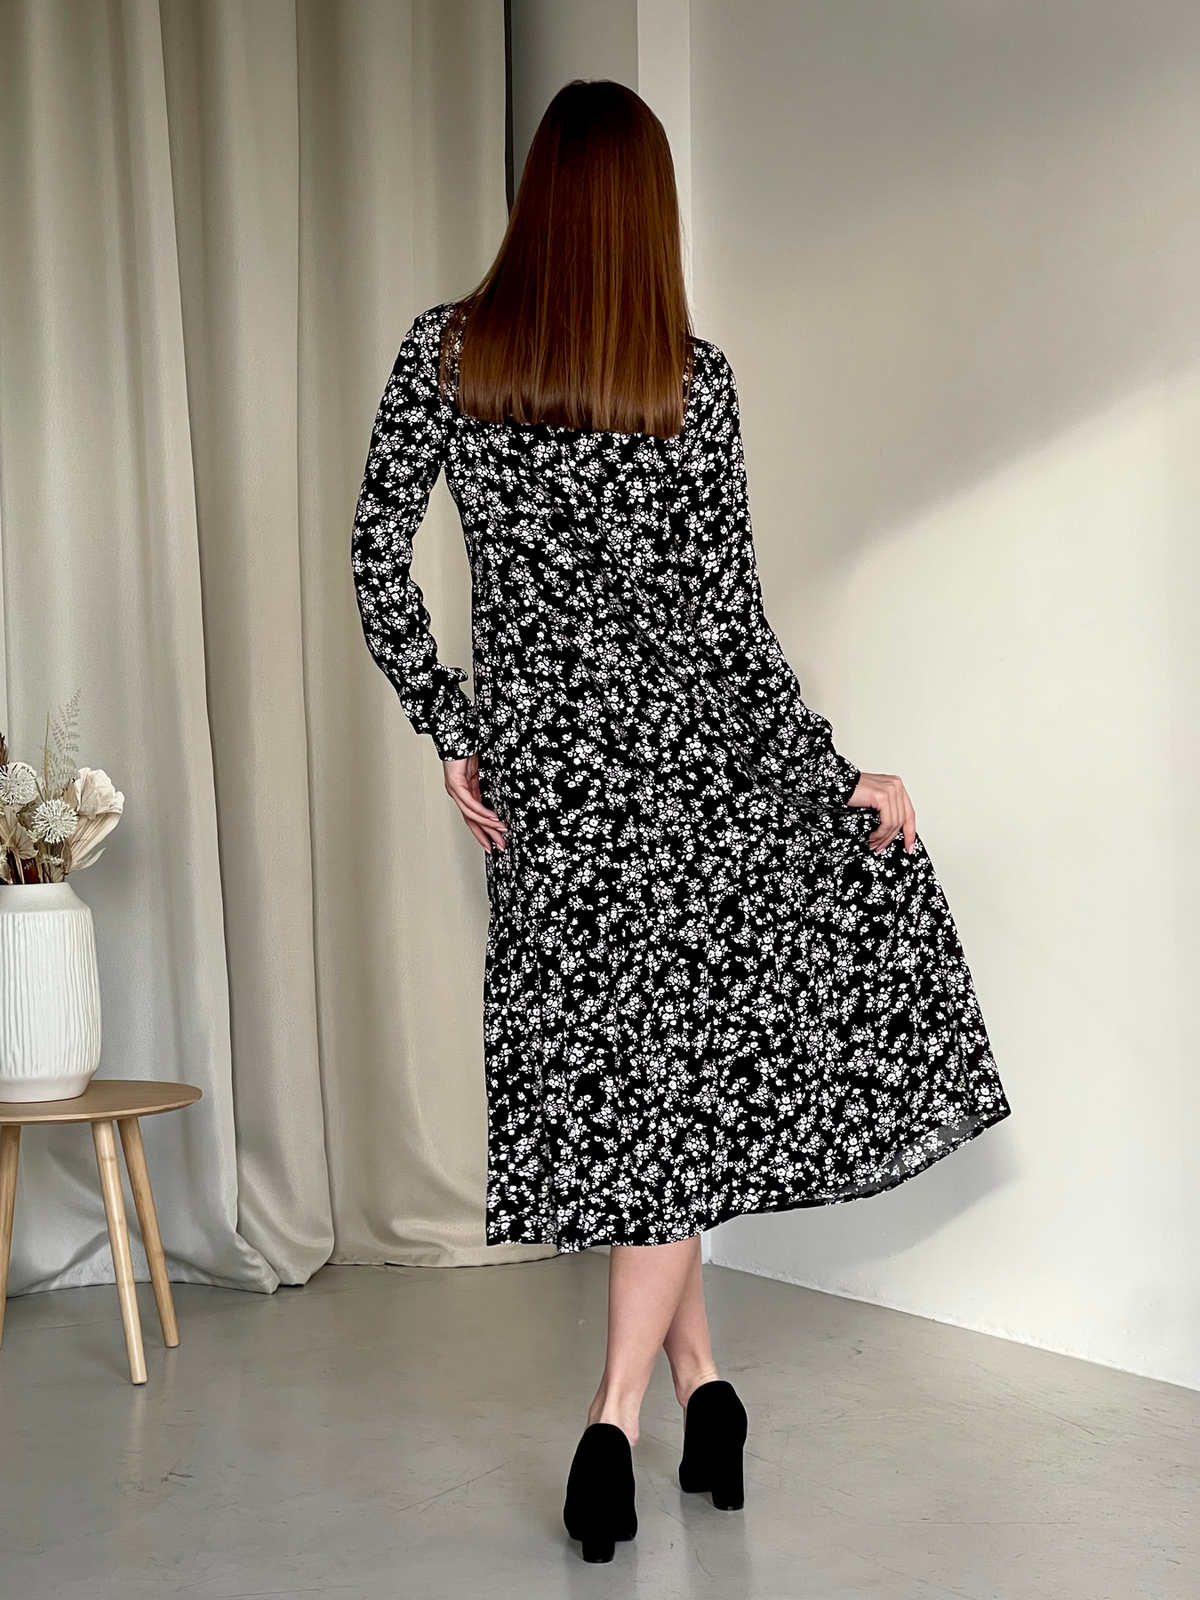 Купить Длинное платье в цветочек из штапеля с длинным рукавом Merlini Корсо 700001182, размер 42-44 (S-M) в интернет-магазине